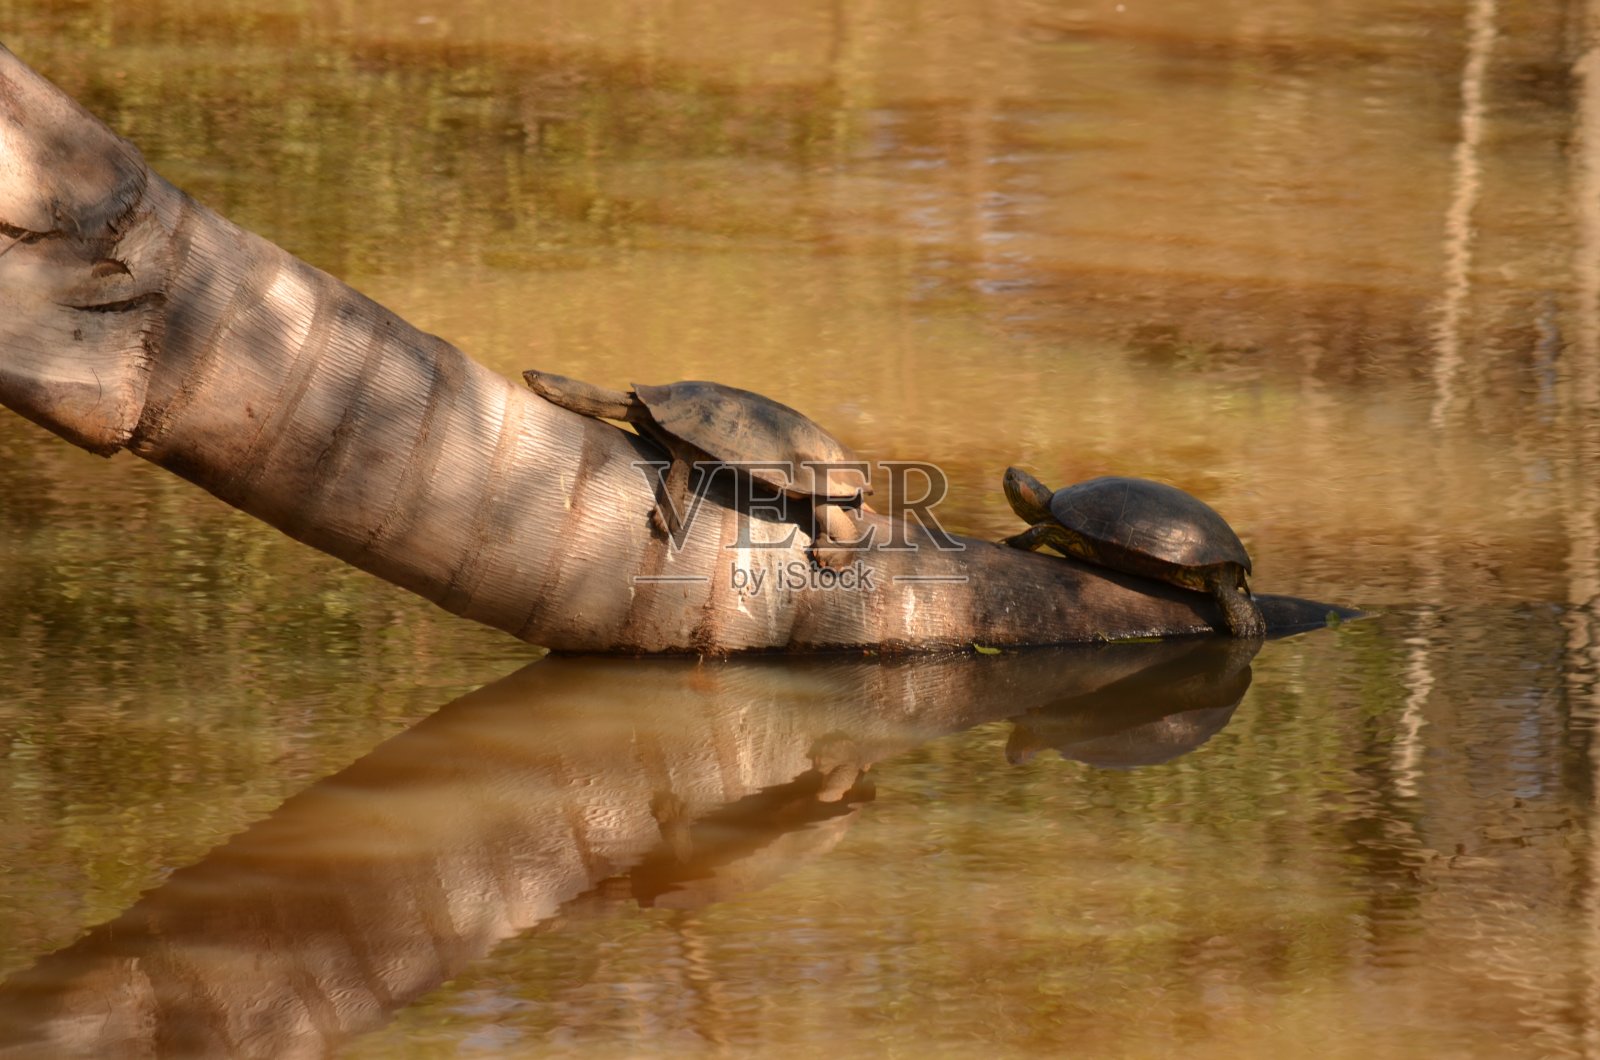 下午在湖中央的树干上休息的海龟照片摄影图片